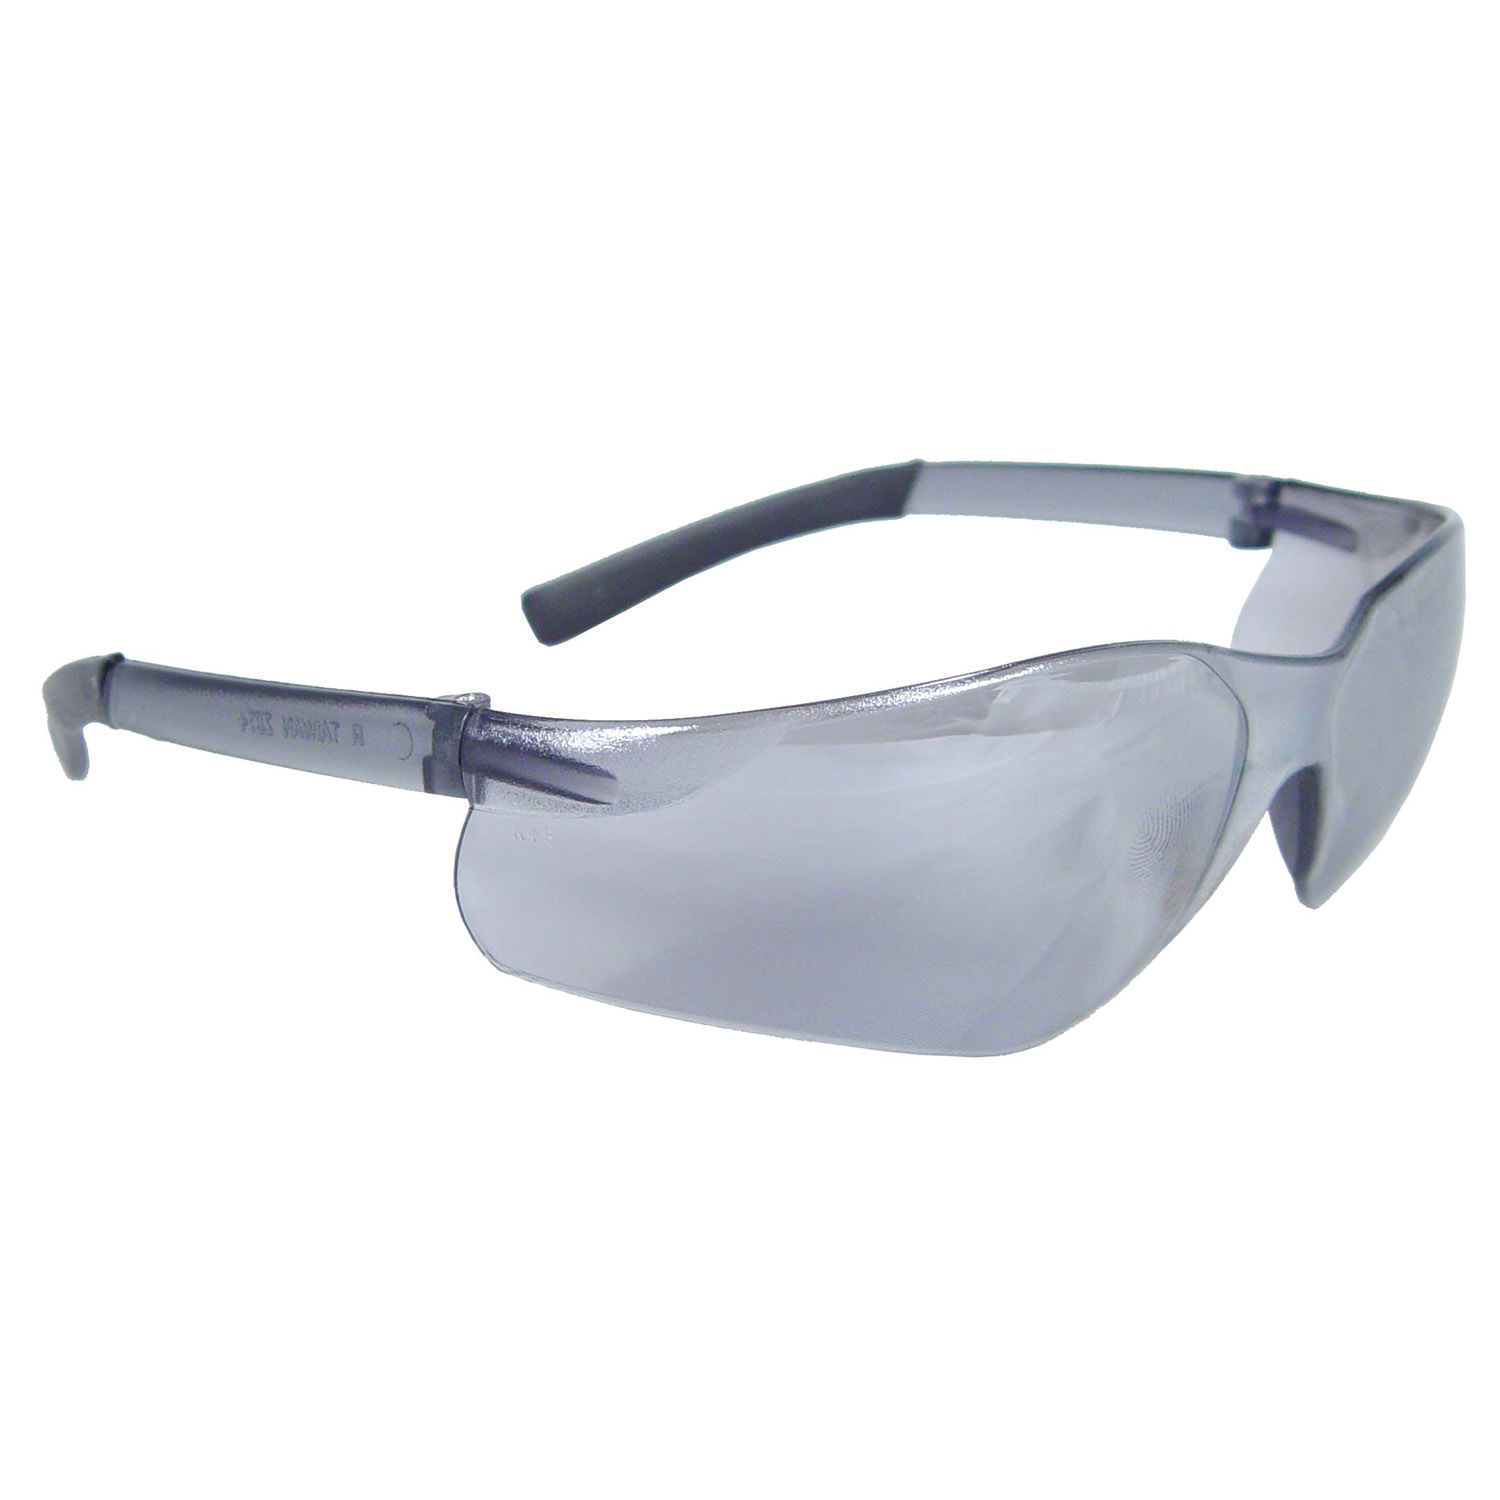 Rad-Atac™ Safety Eyewear - Silver Mirror Frame - Silver Mirror Lens - Mirror Lens